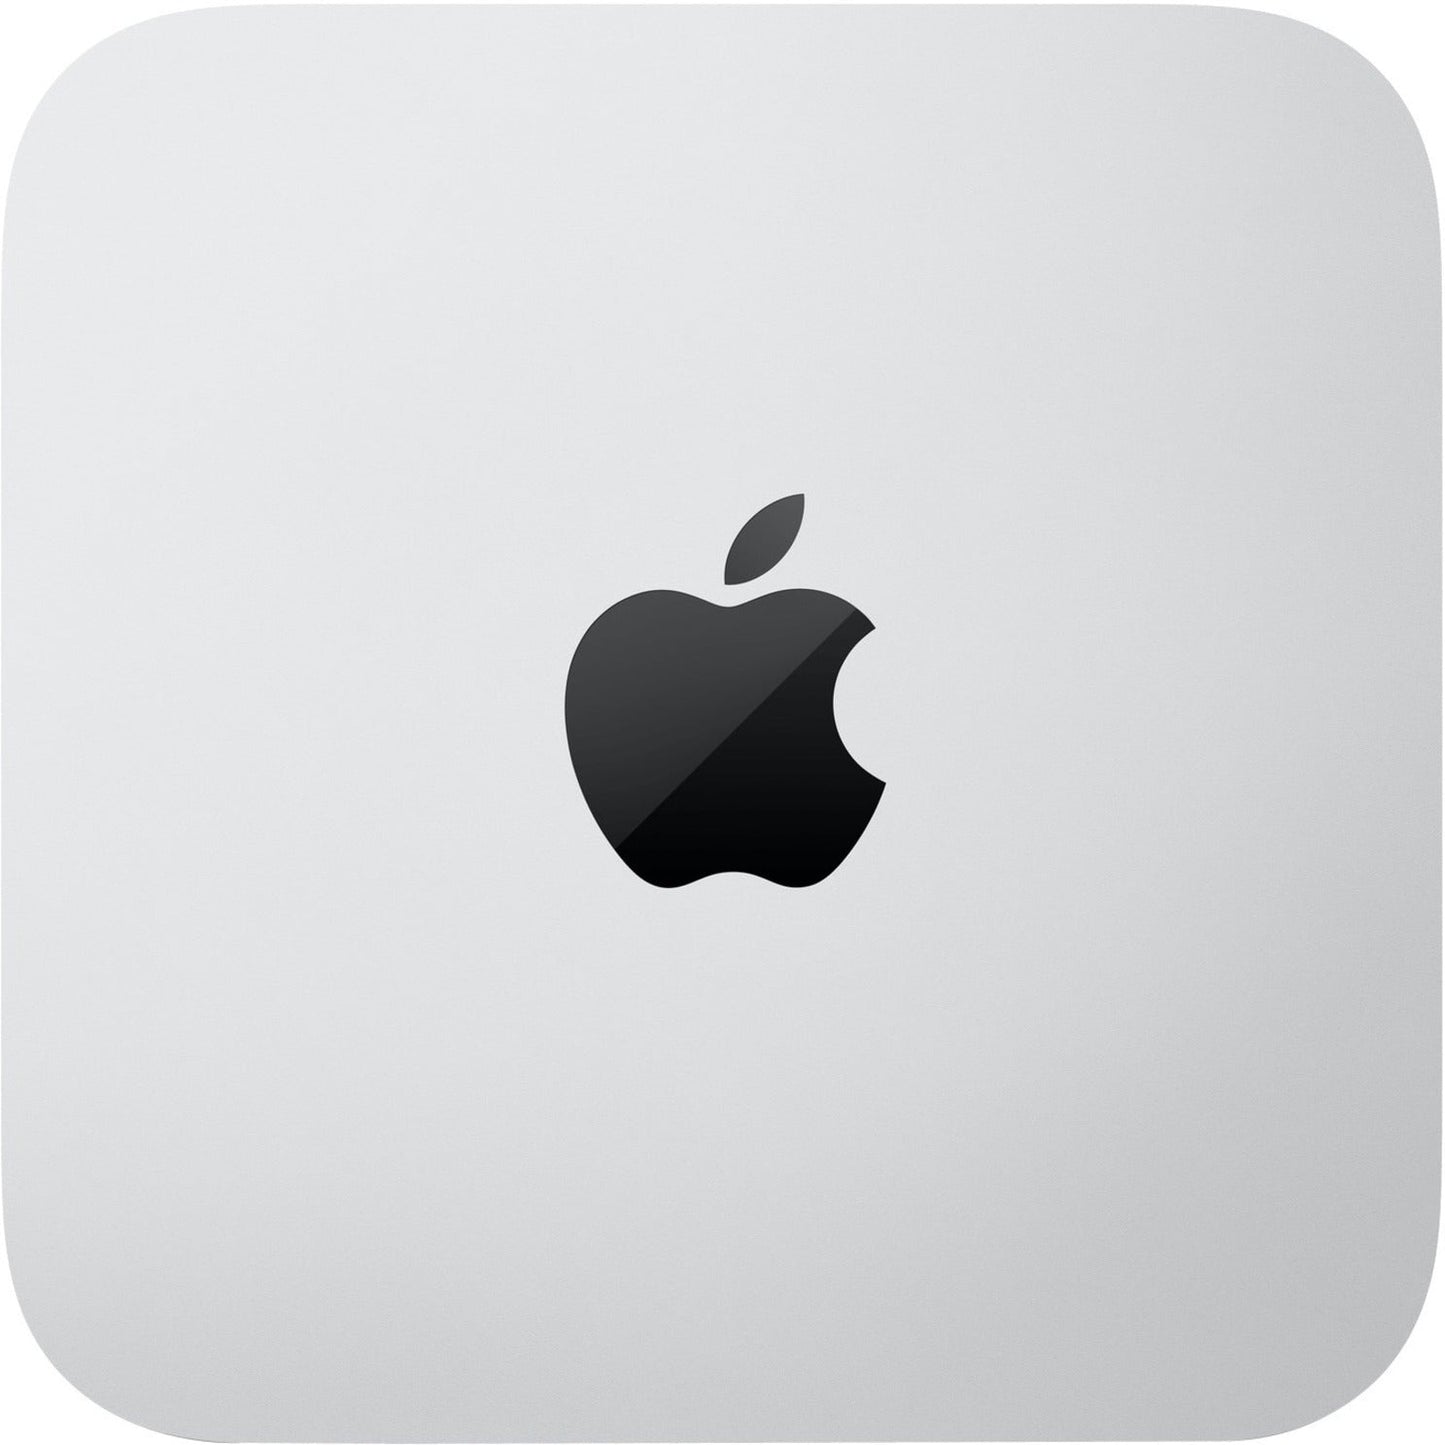 Apple Mac mini MNH73LL/A Desktop Computer - Apple M2 Pro Deca-core (10 Core) - 16 GB RAM - 512 GB SSD - Mini PC - Silver